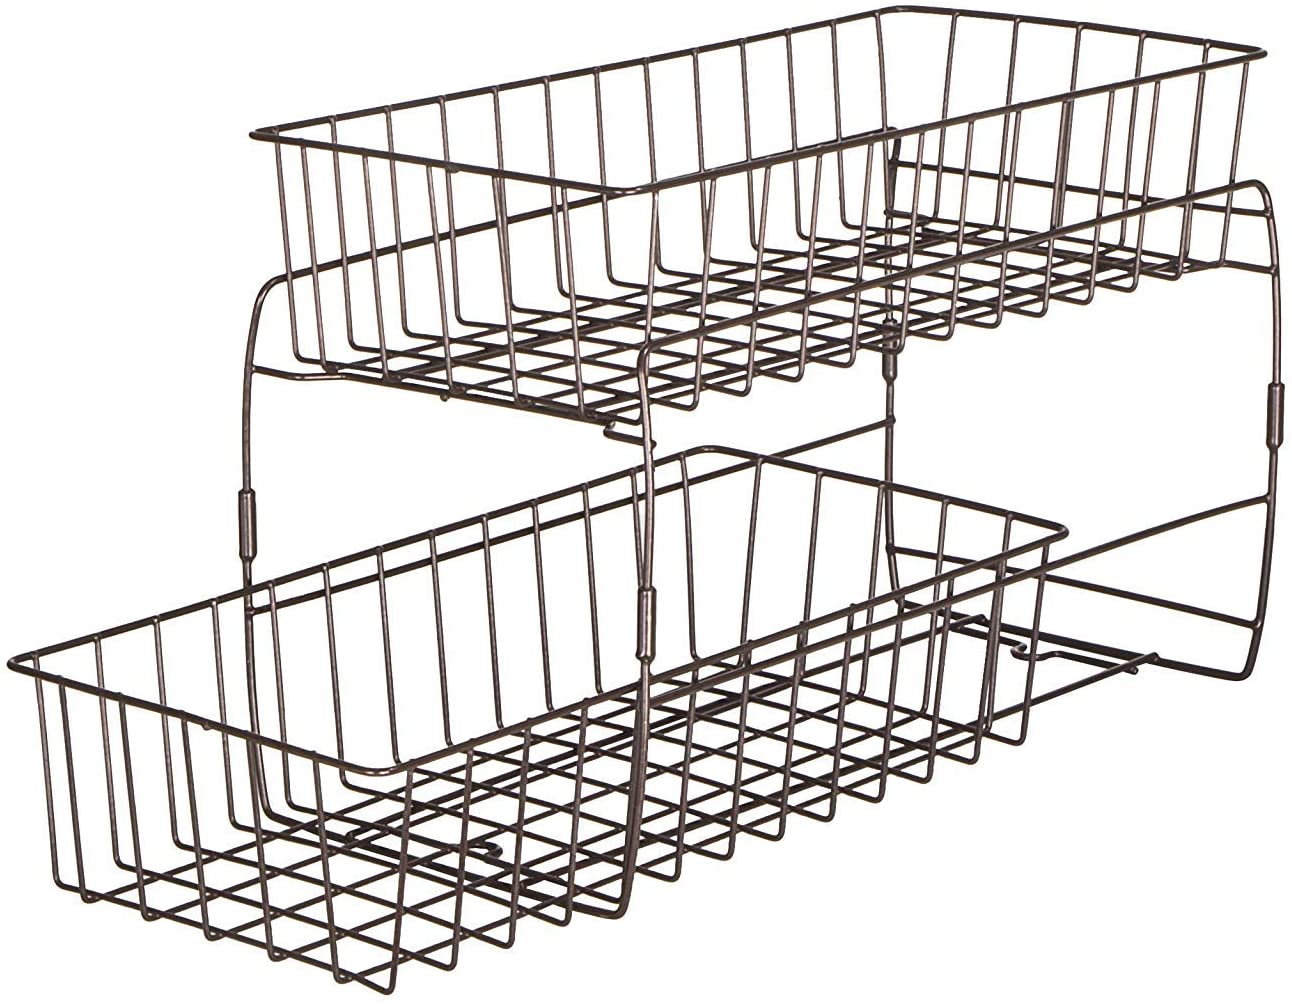 https://www.shopsmartdesign.com/cdn/shop/products/2-tier-stackable-pull-out-baskets-white-smart-design-kitchen-8406188-incrementing-number-339039.jpg?v=1679346786